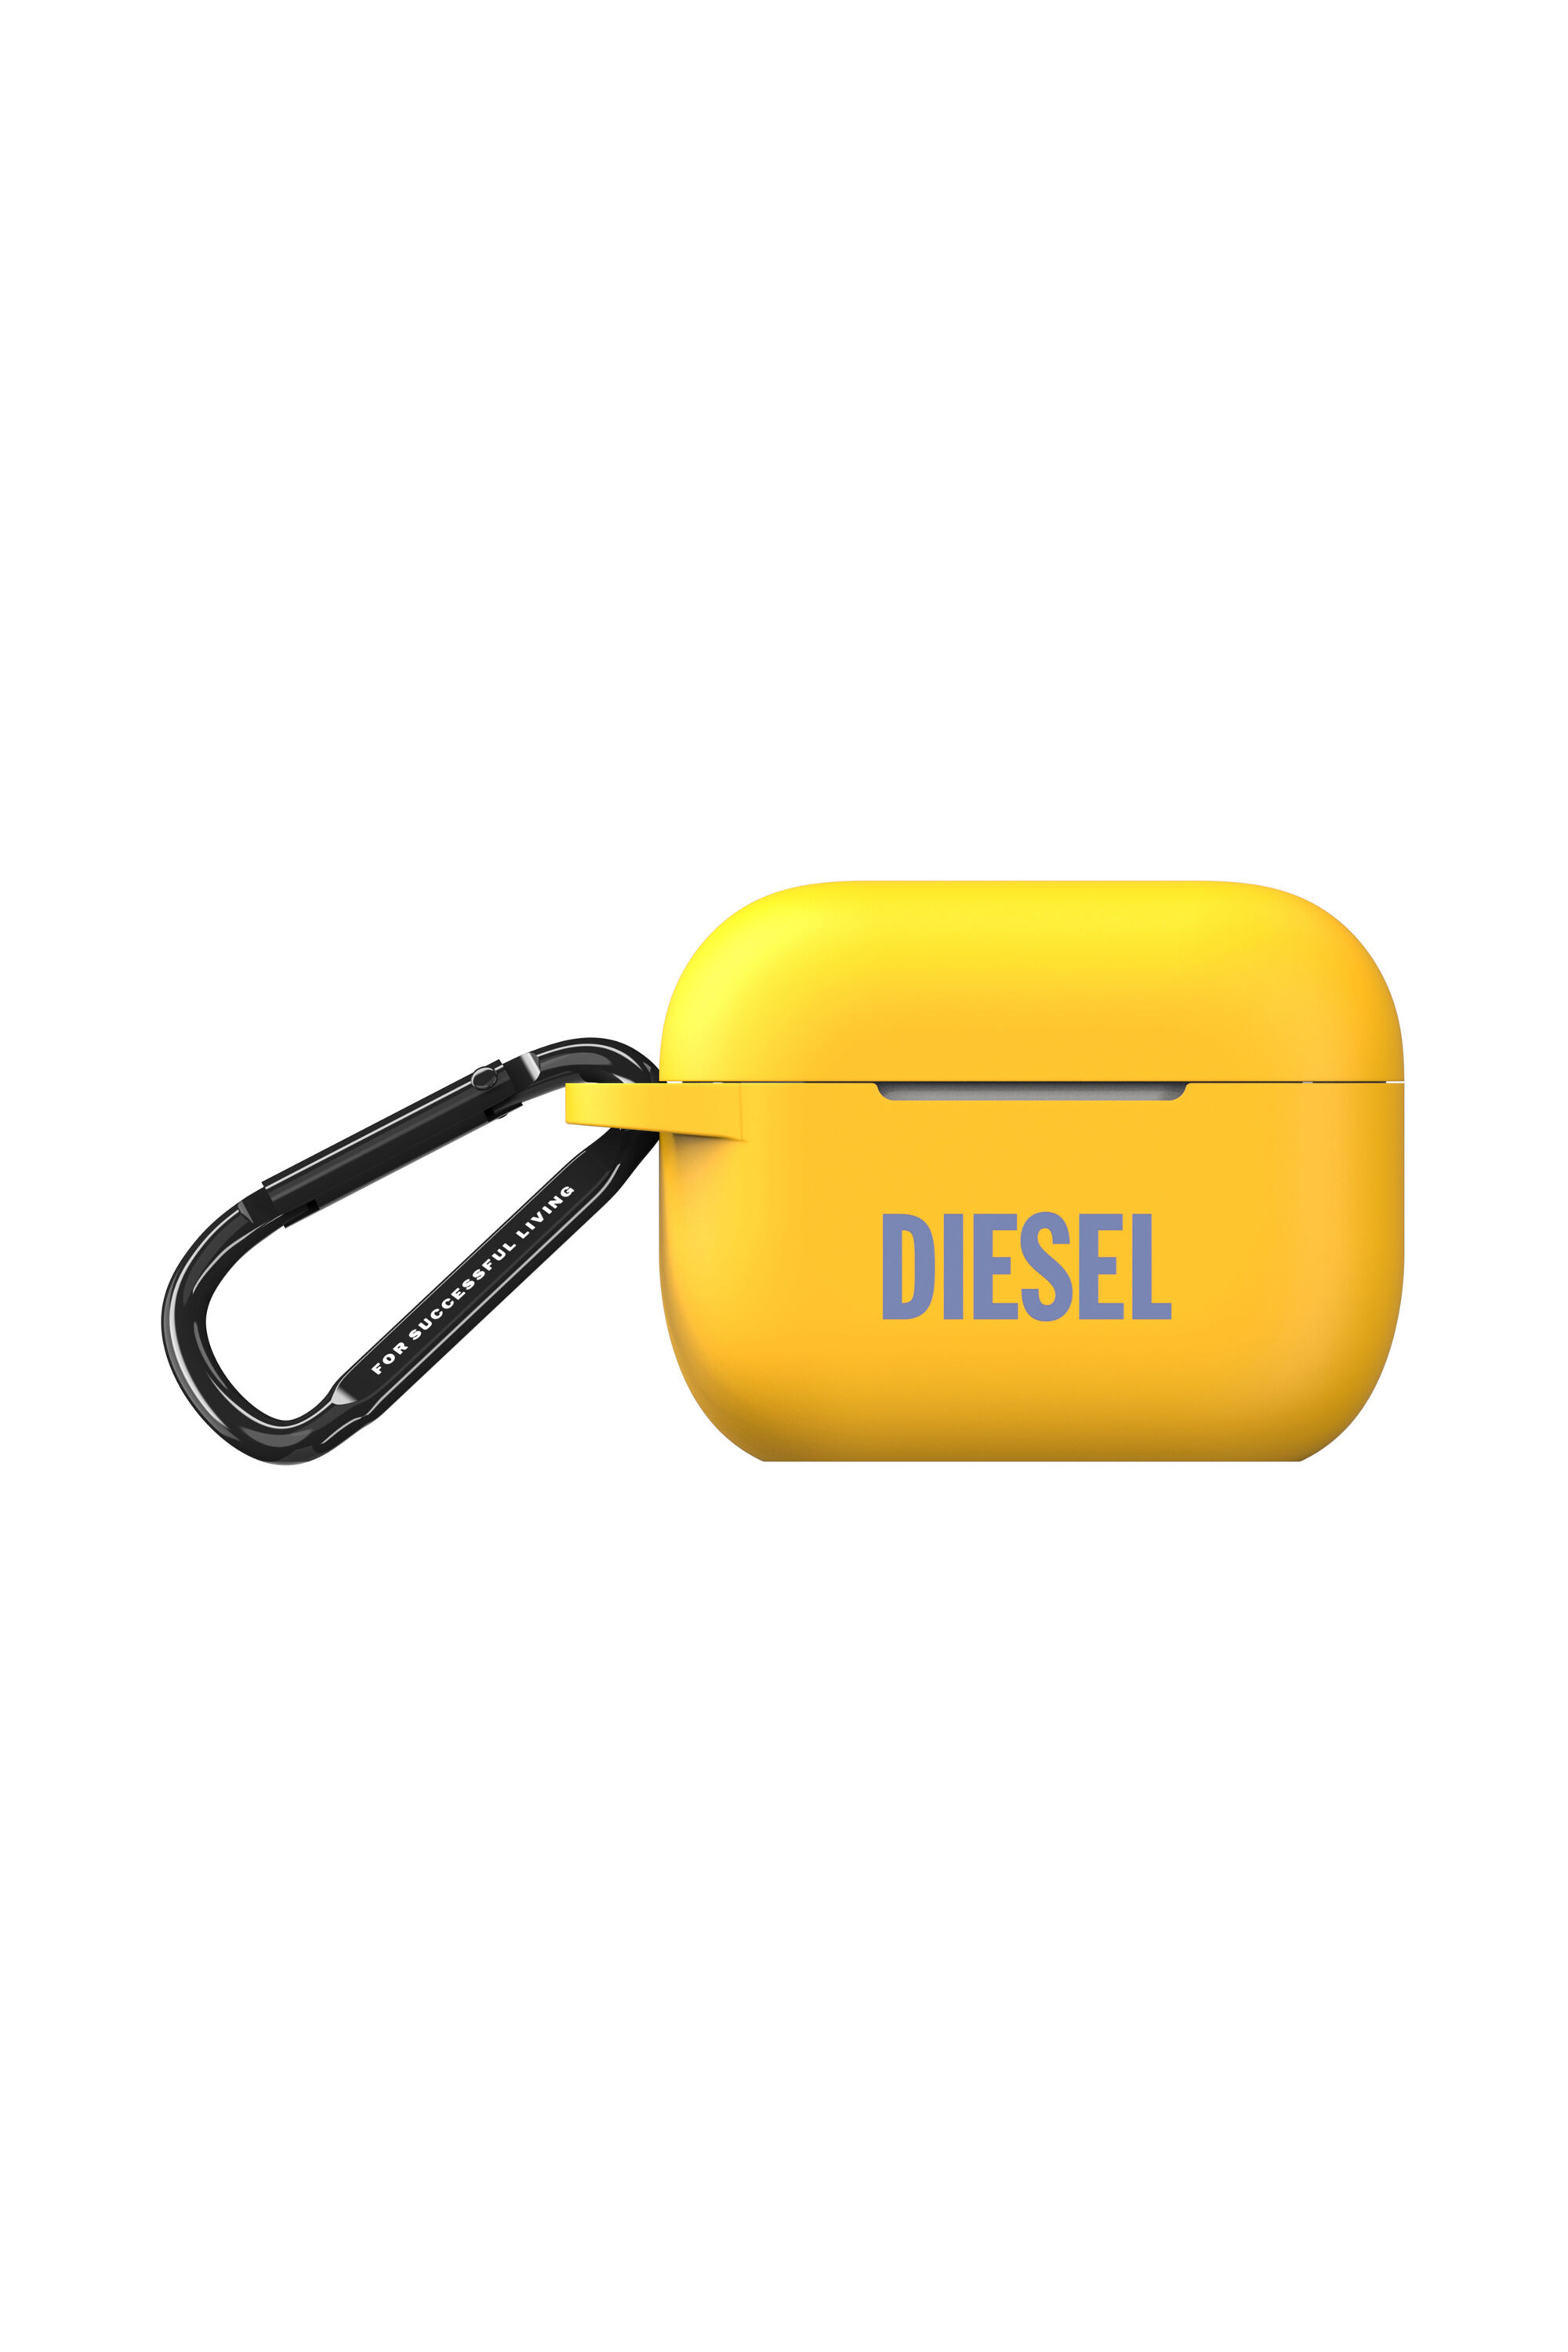 Diesel - 48322 AIRPOD CASE,  - Image 1